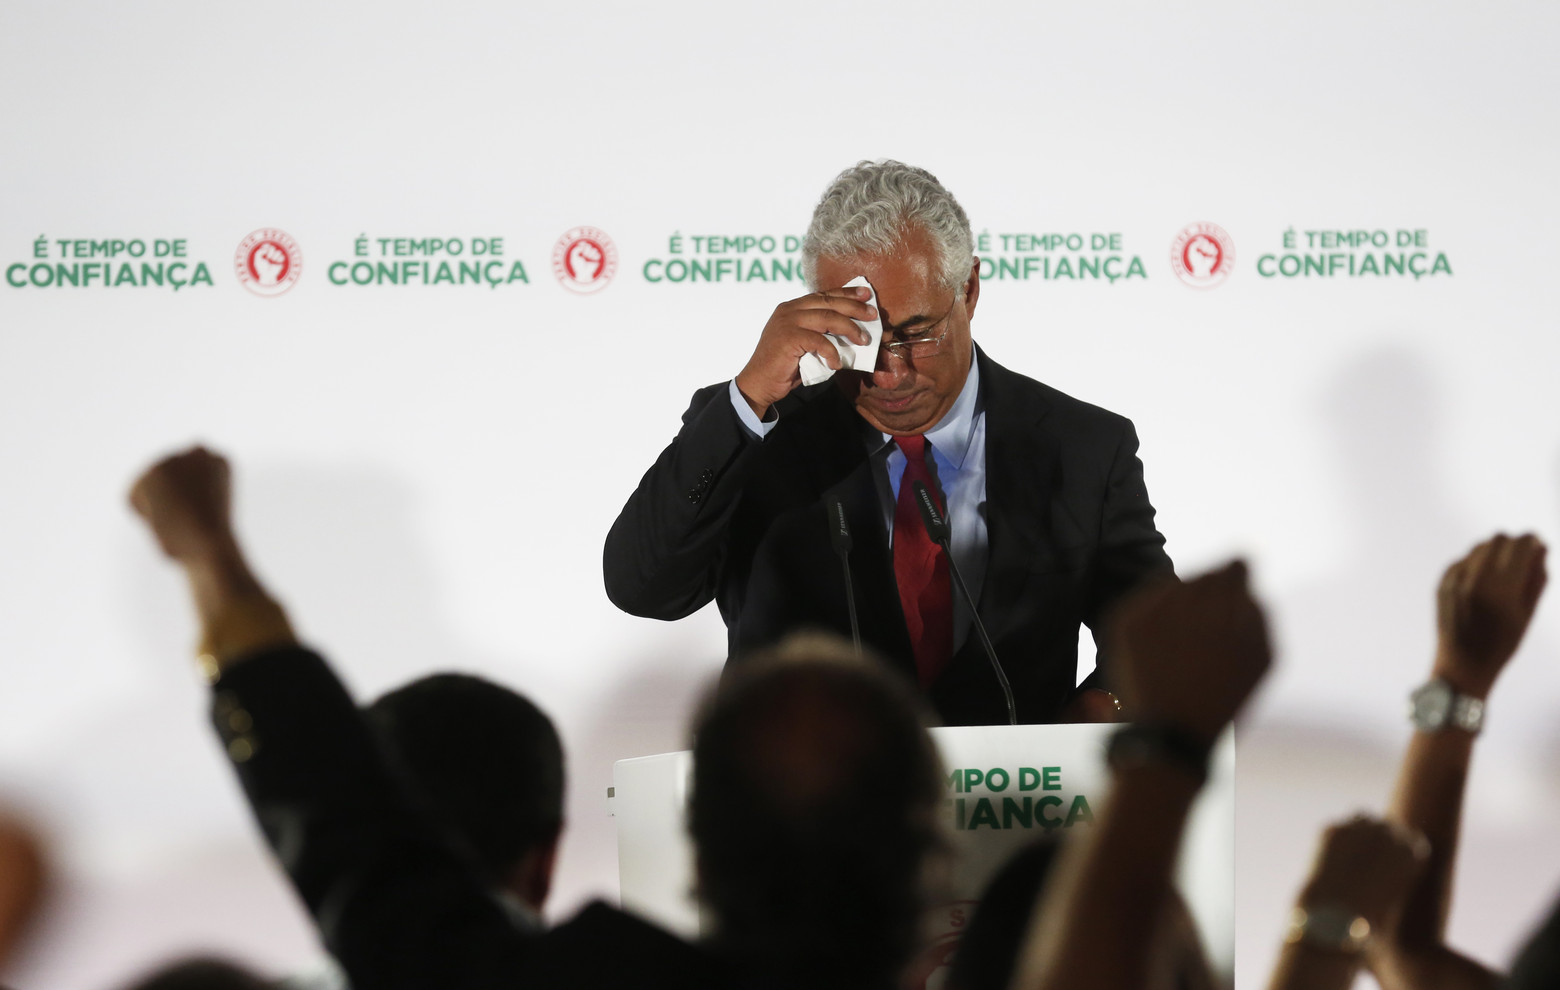 Teodora Cardoso diz que PM português tem “boas condições” para ser reeleito se mantiver rumo